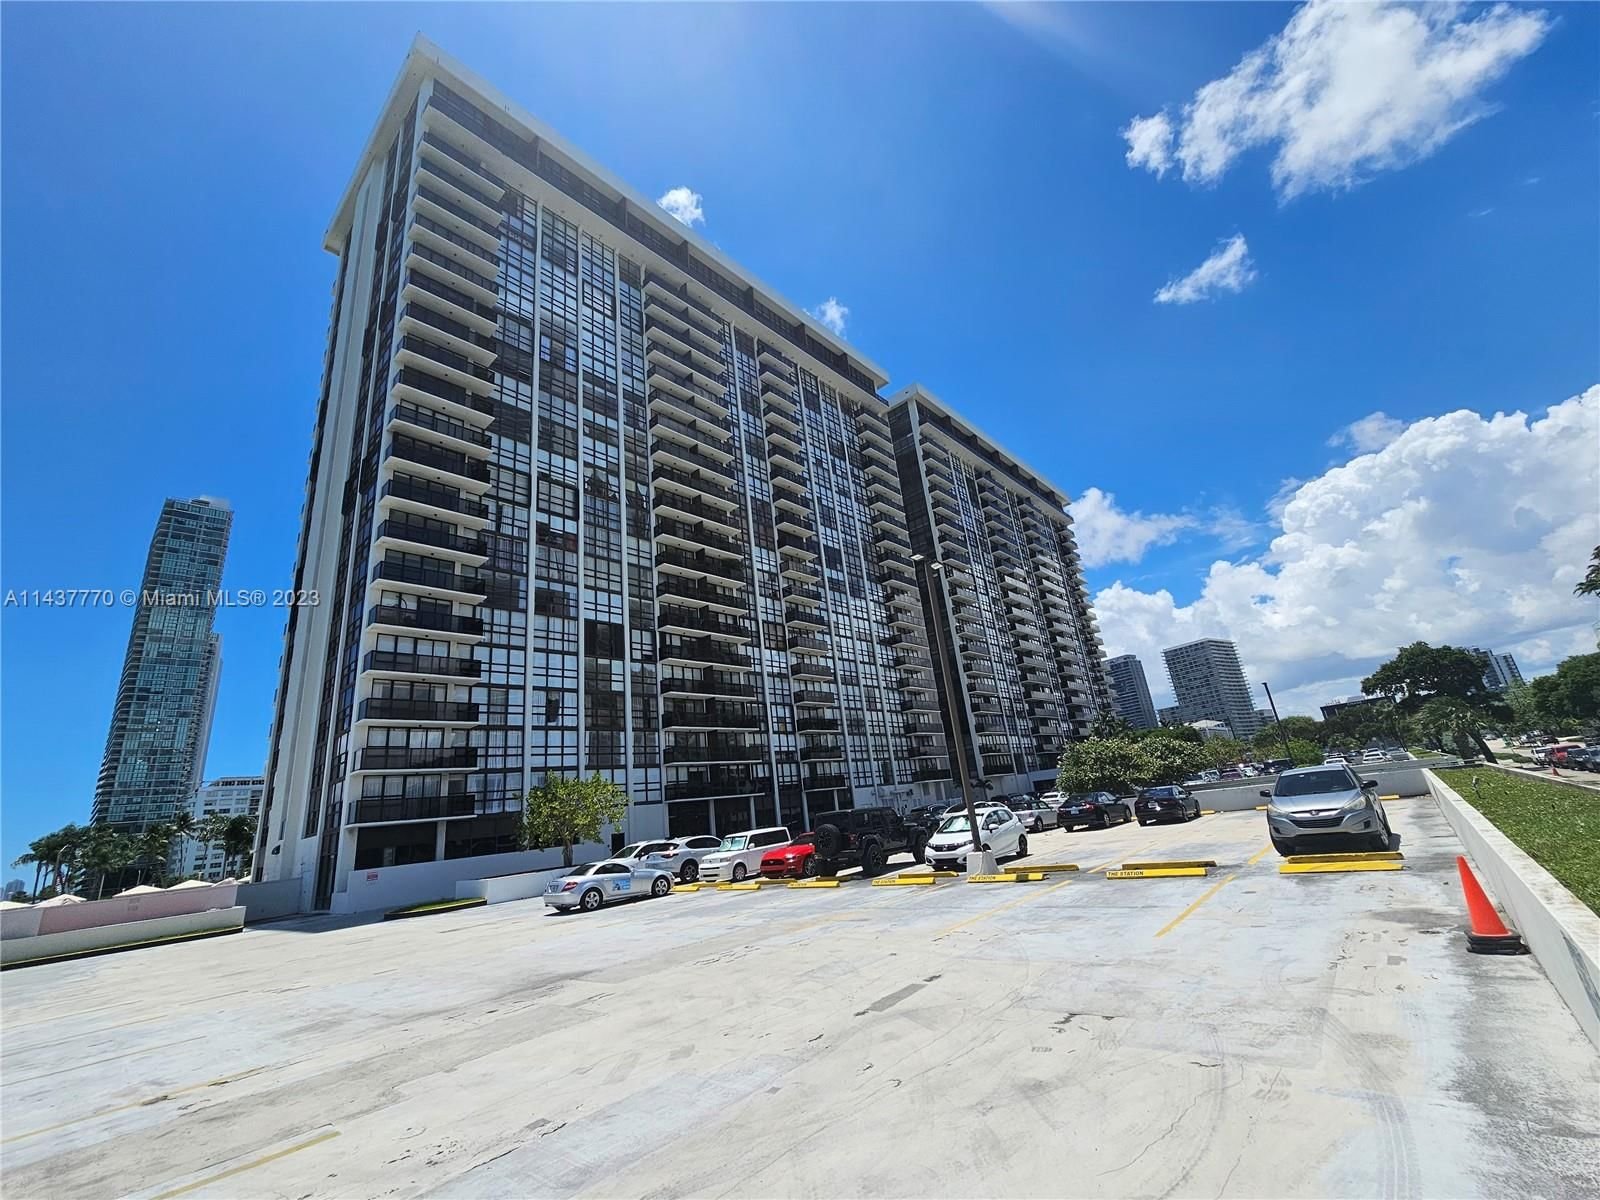 Real estate property located at 600 36th St #1419, Miami-Dade County, CHARTER CLUB CONDO, Miami, FL